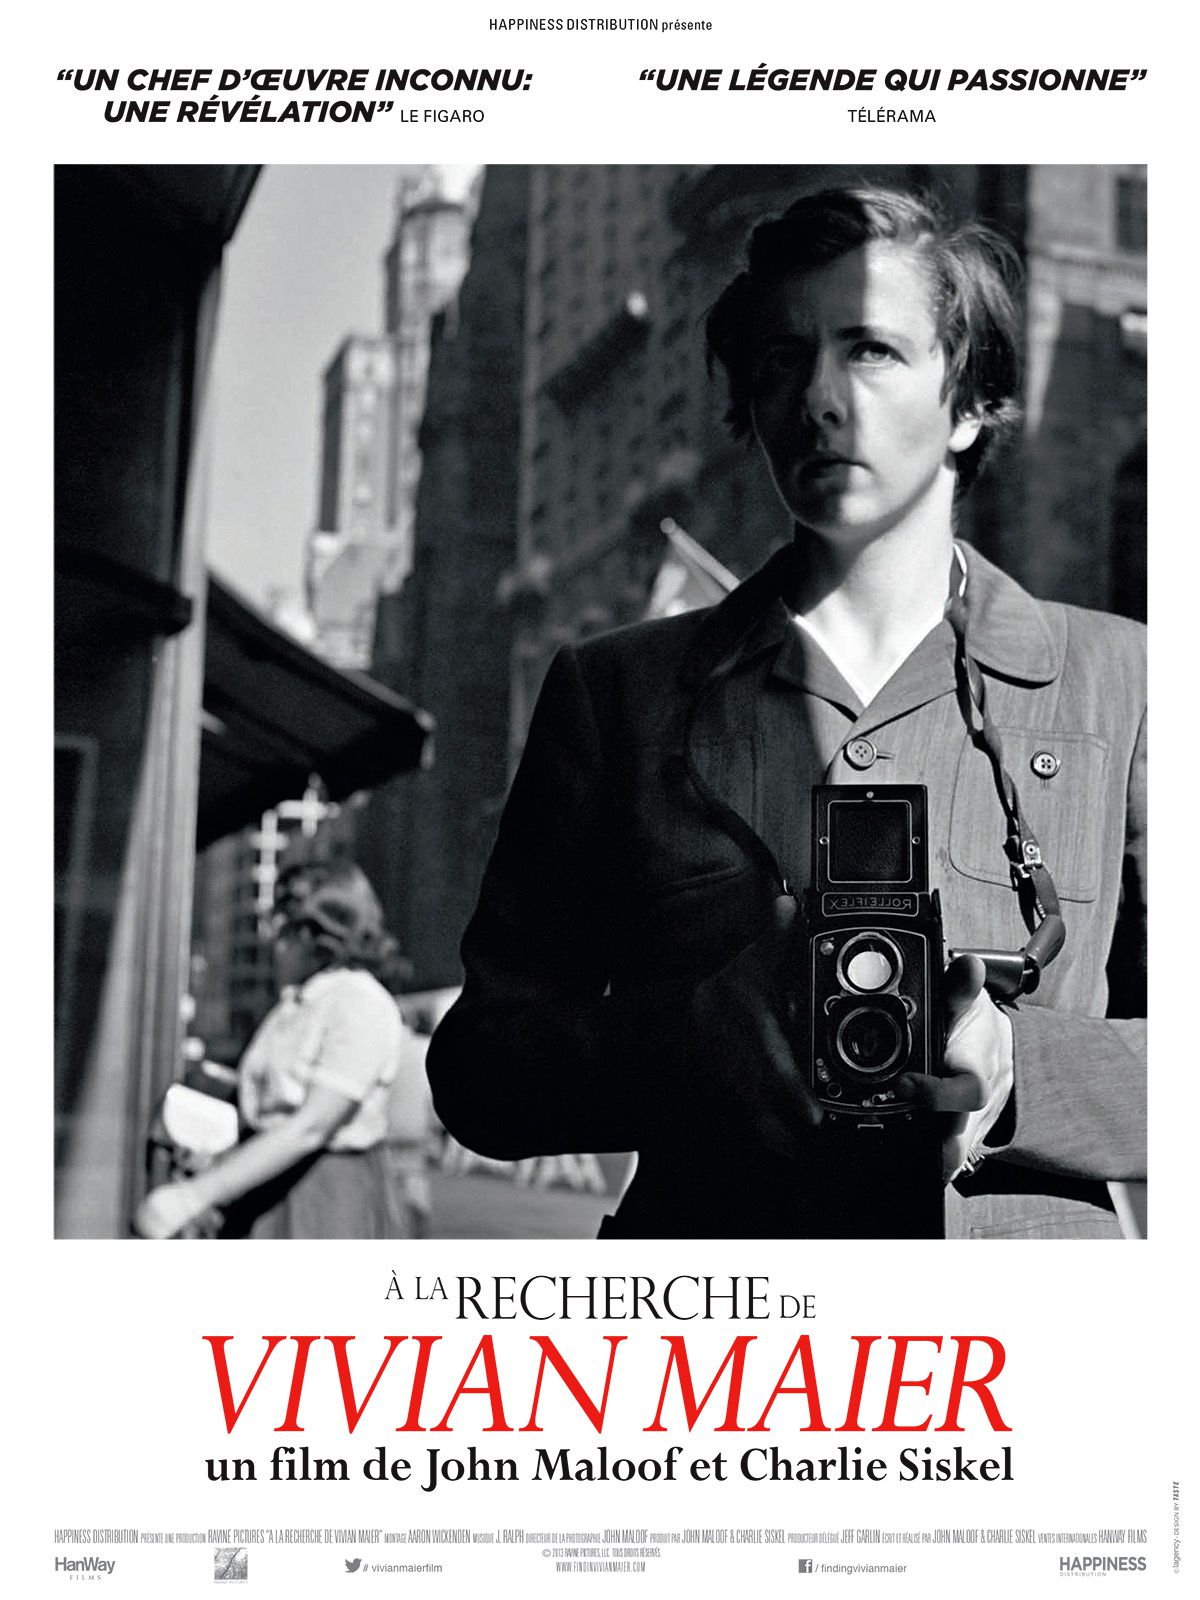 À la recherche de Vivian Maier - Documentaire (2013) streaming VF gratuit complet